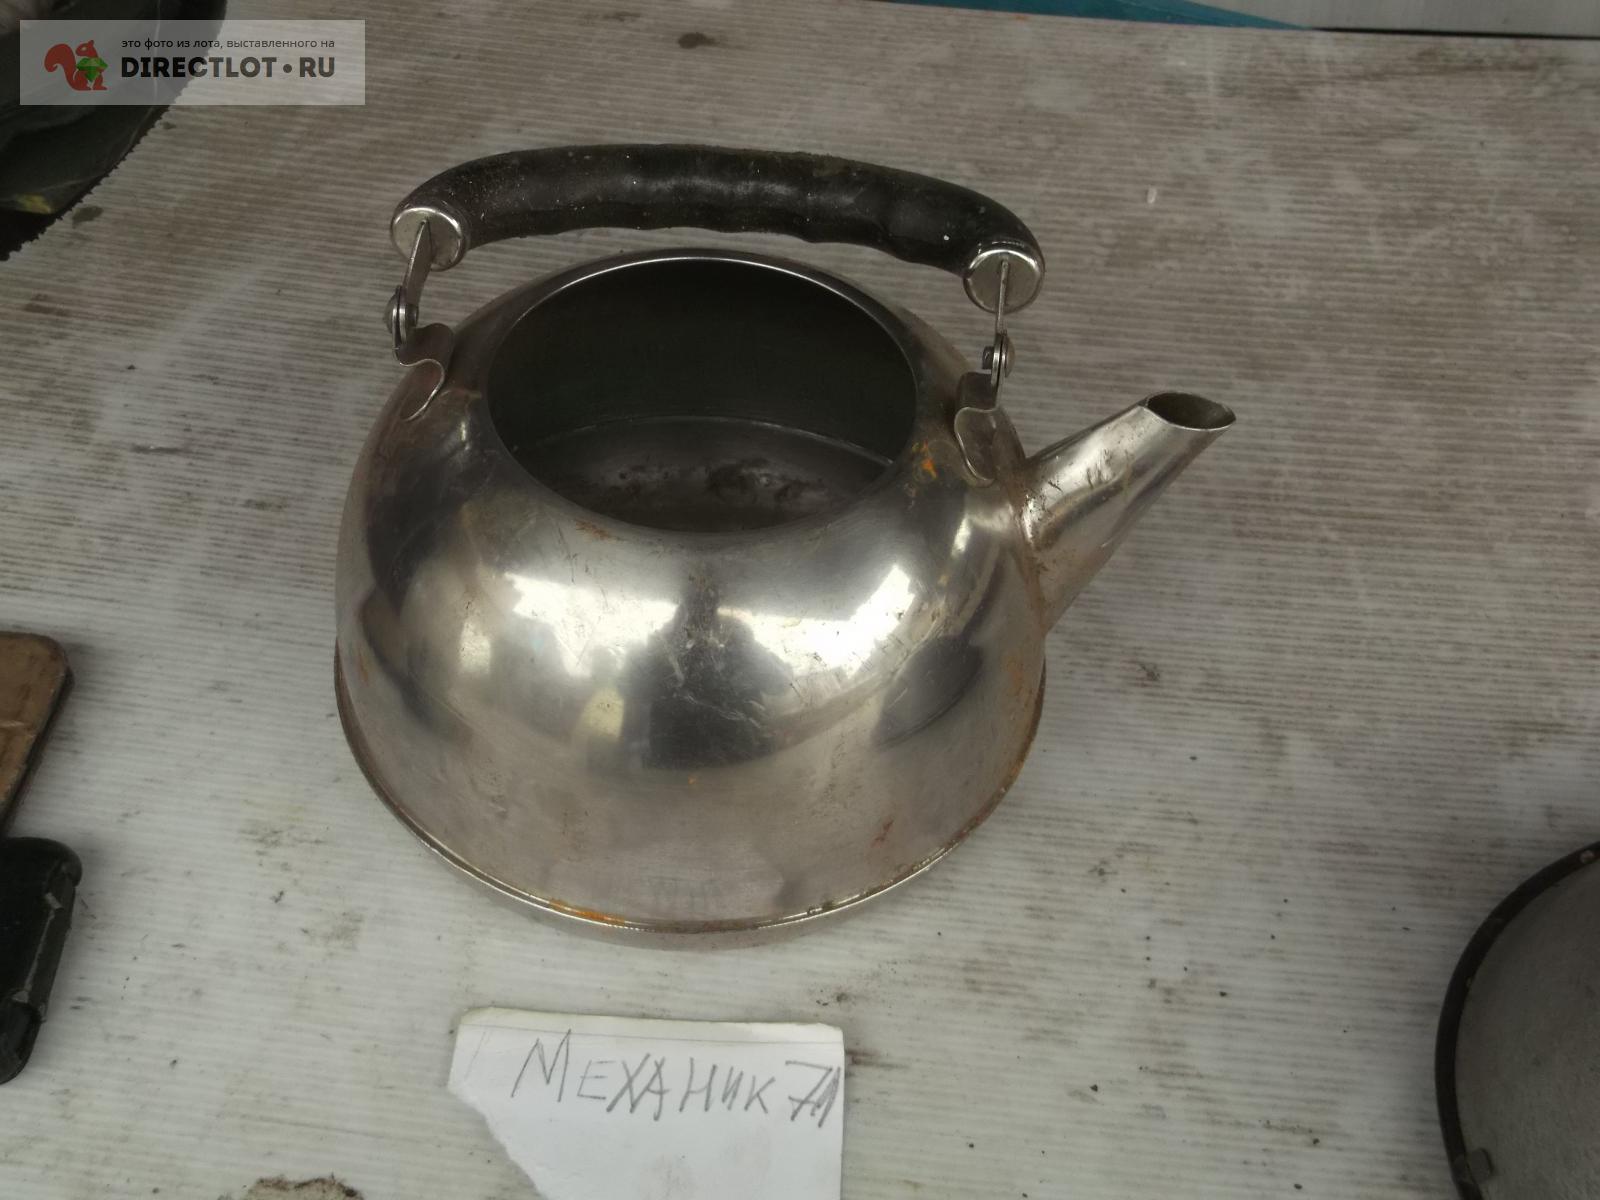 чайник нержавейка  в Омске цена 180 Р на DIRECTLOT.RU - Товары .